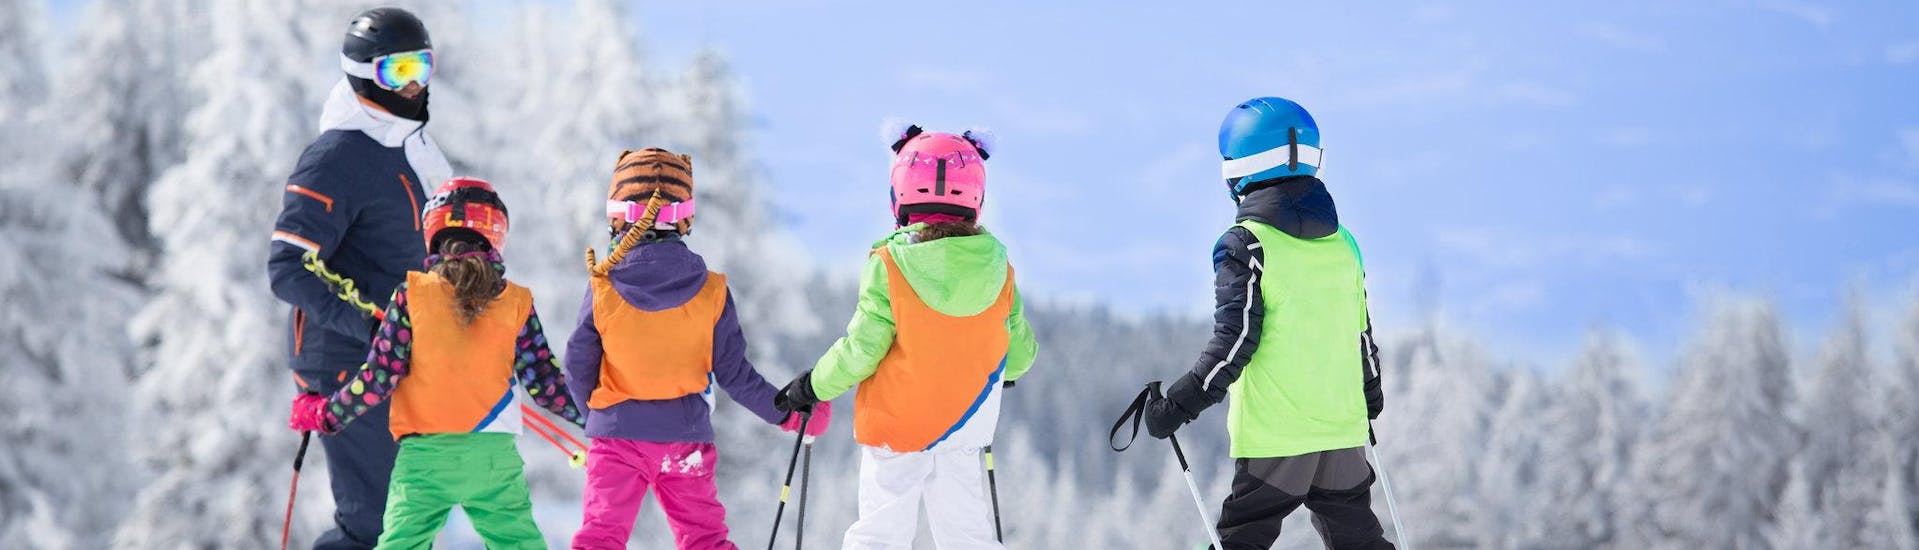 3 skieurs se préparent avant un cours de ski en anglais dans la destination de ski Westendorf.